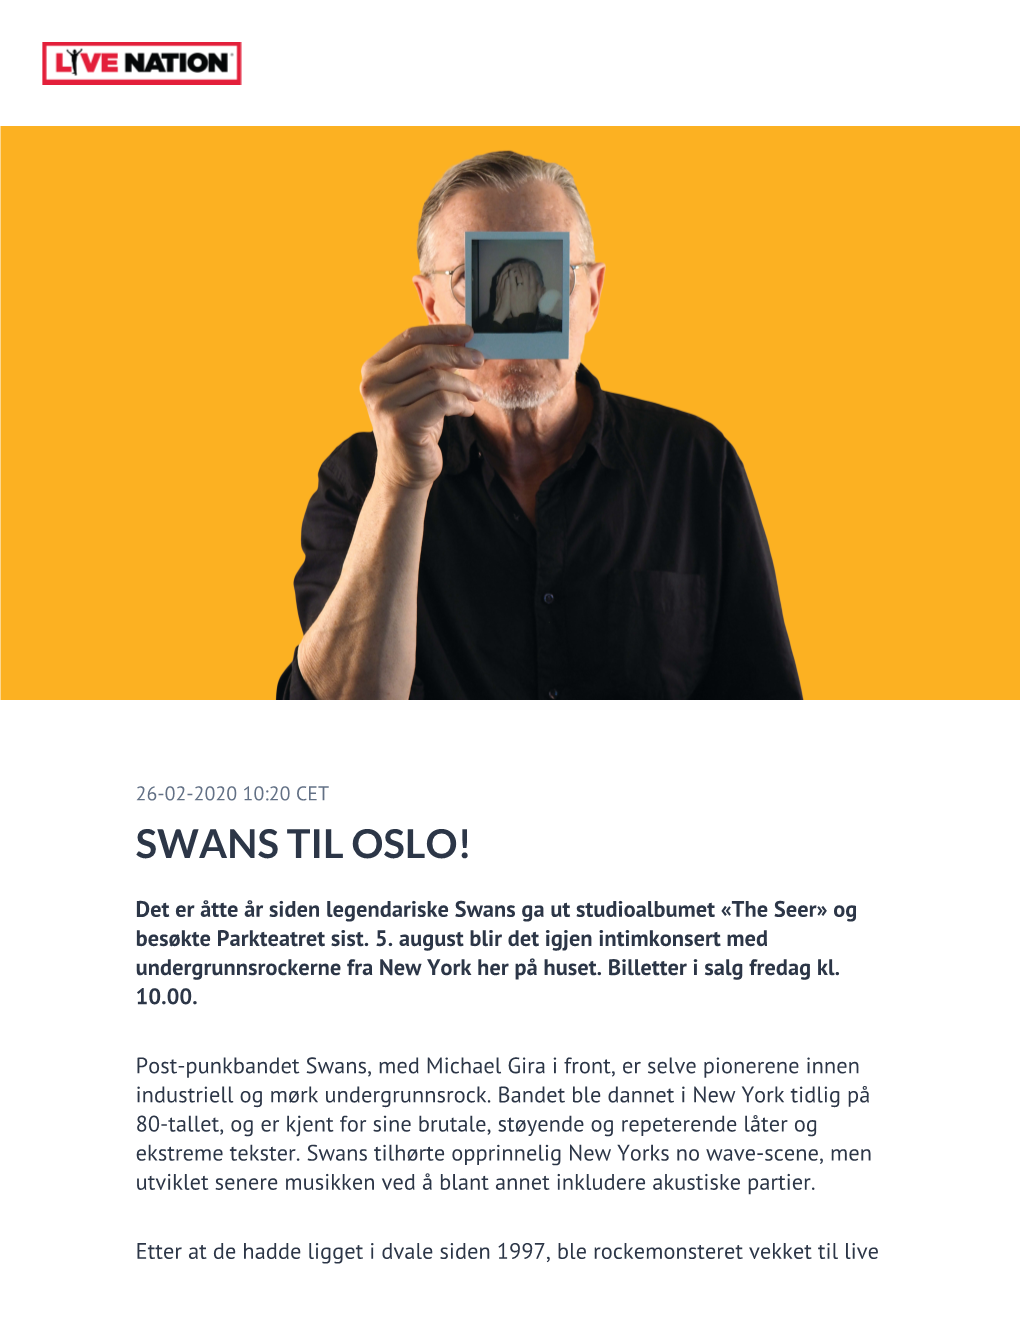 Swans Til Oslo!